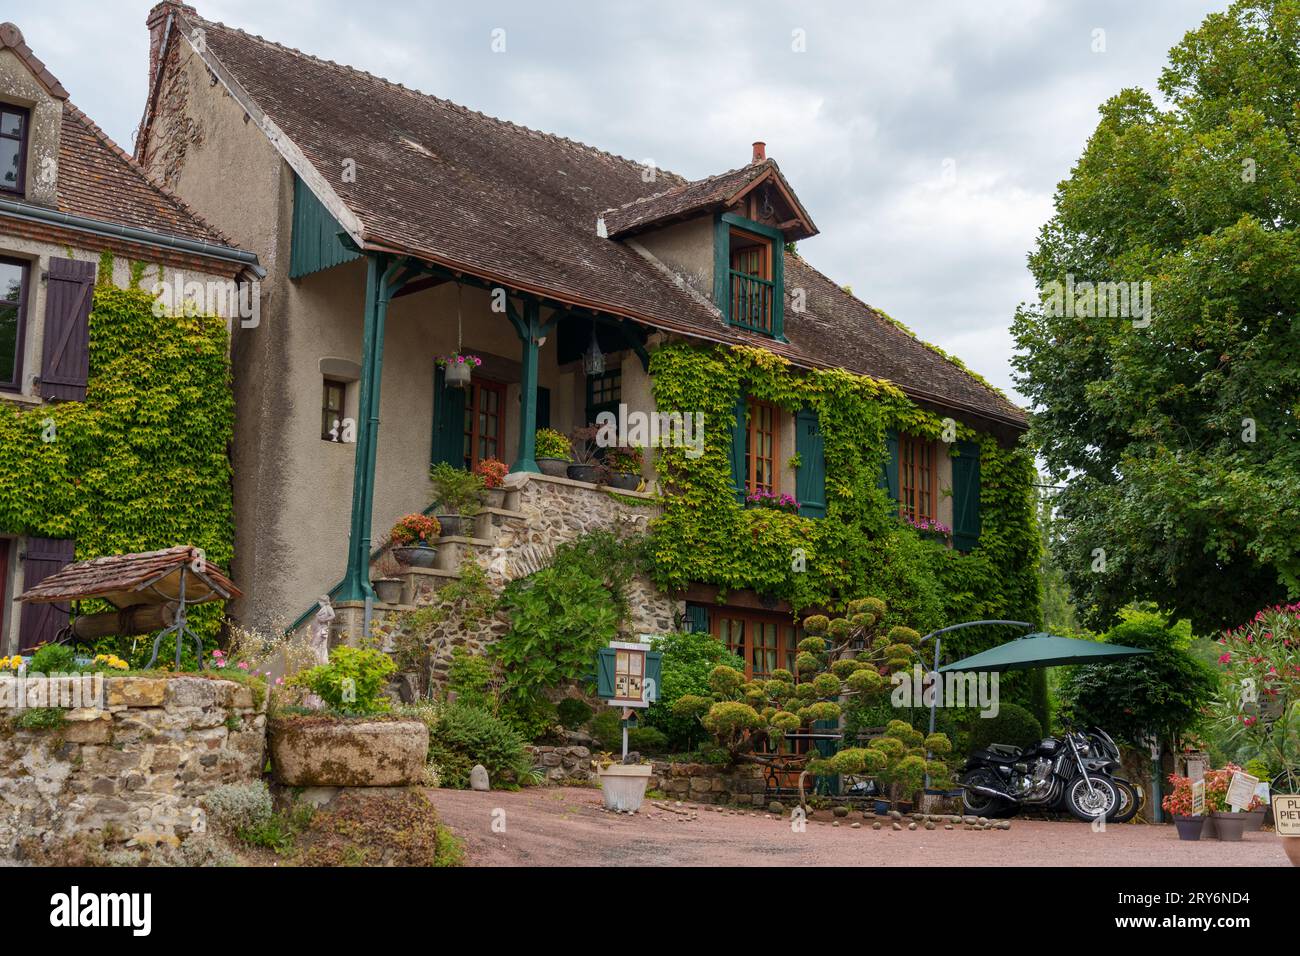 Gargilesse-Dampierre gilt als eines der schönsten Dörfer Frankreichs Stockfoto